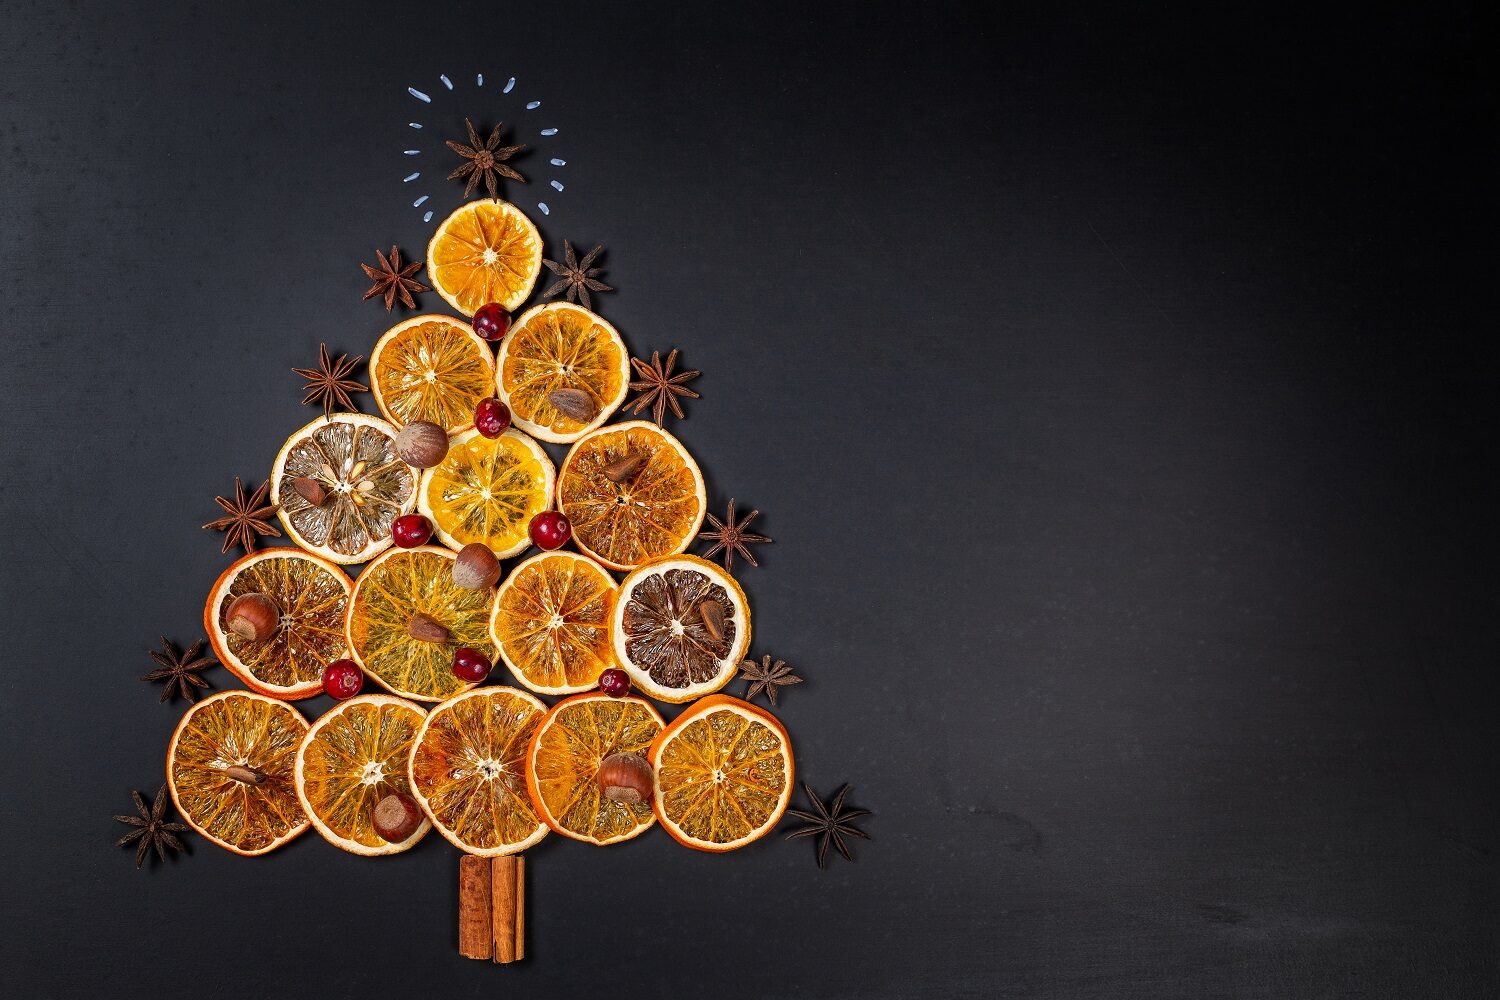 Pom de Crăciun realizat din felii de portocala uscate, betisoare de scortisoara si stea de anason in varf , fotografiat de fundal negru - imagine concept pentru condimente și mirodenii de Crăciun